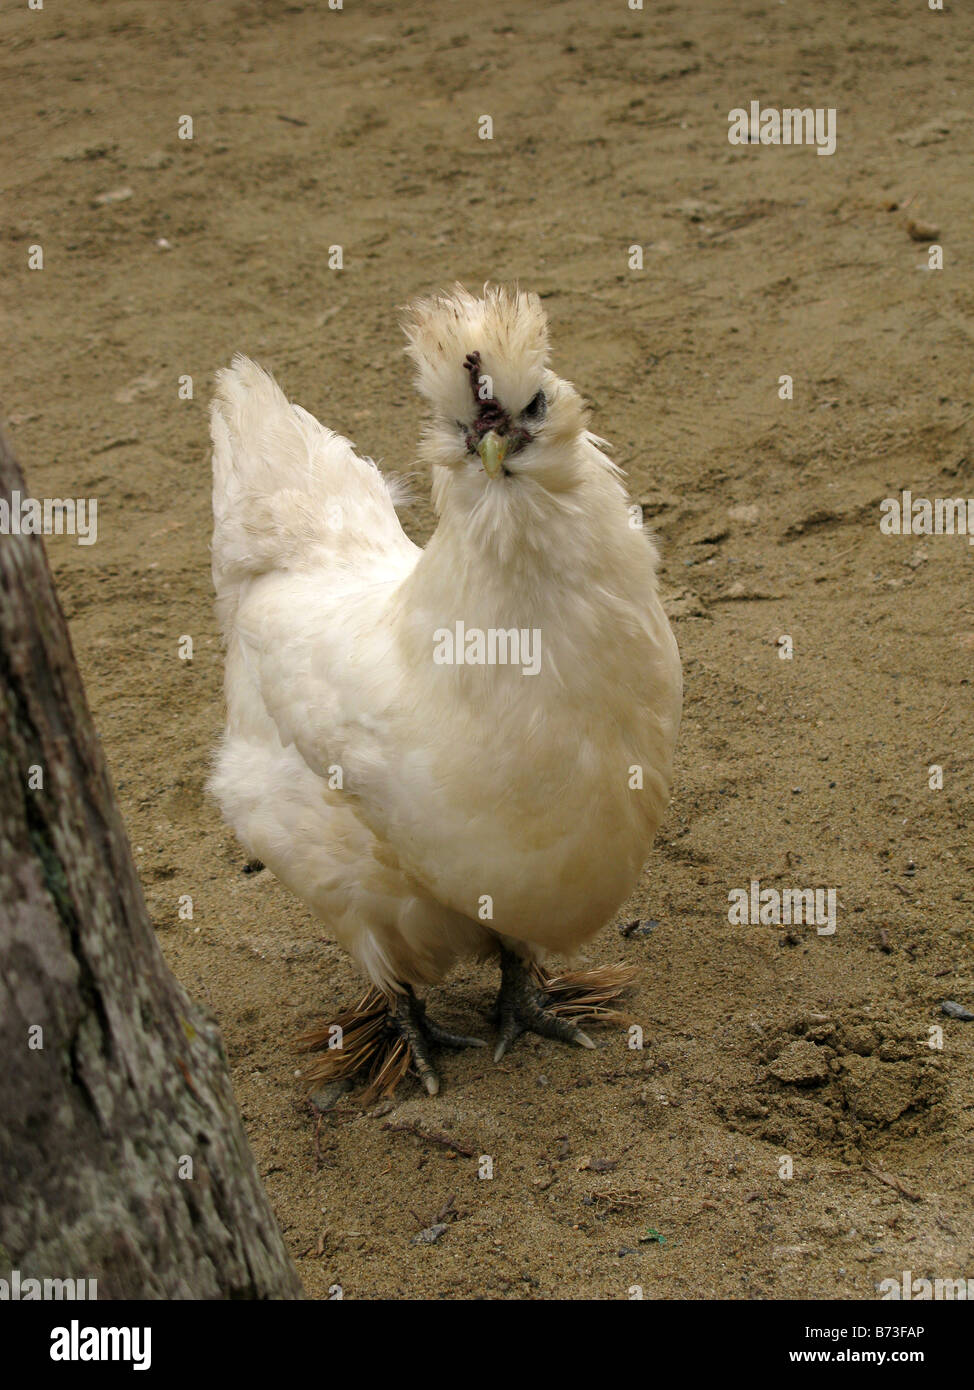 hairy chicken, white chicken, rare specie Stock Photo